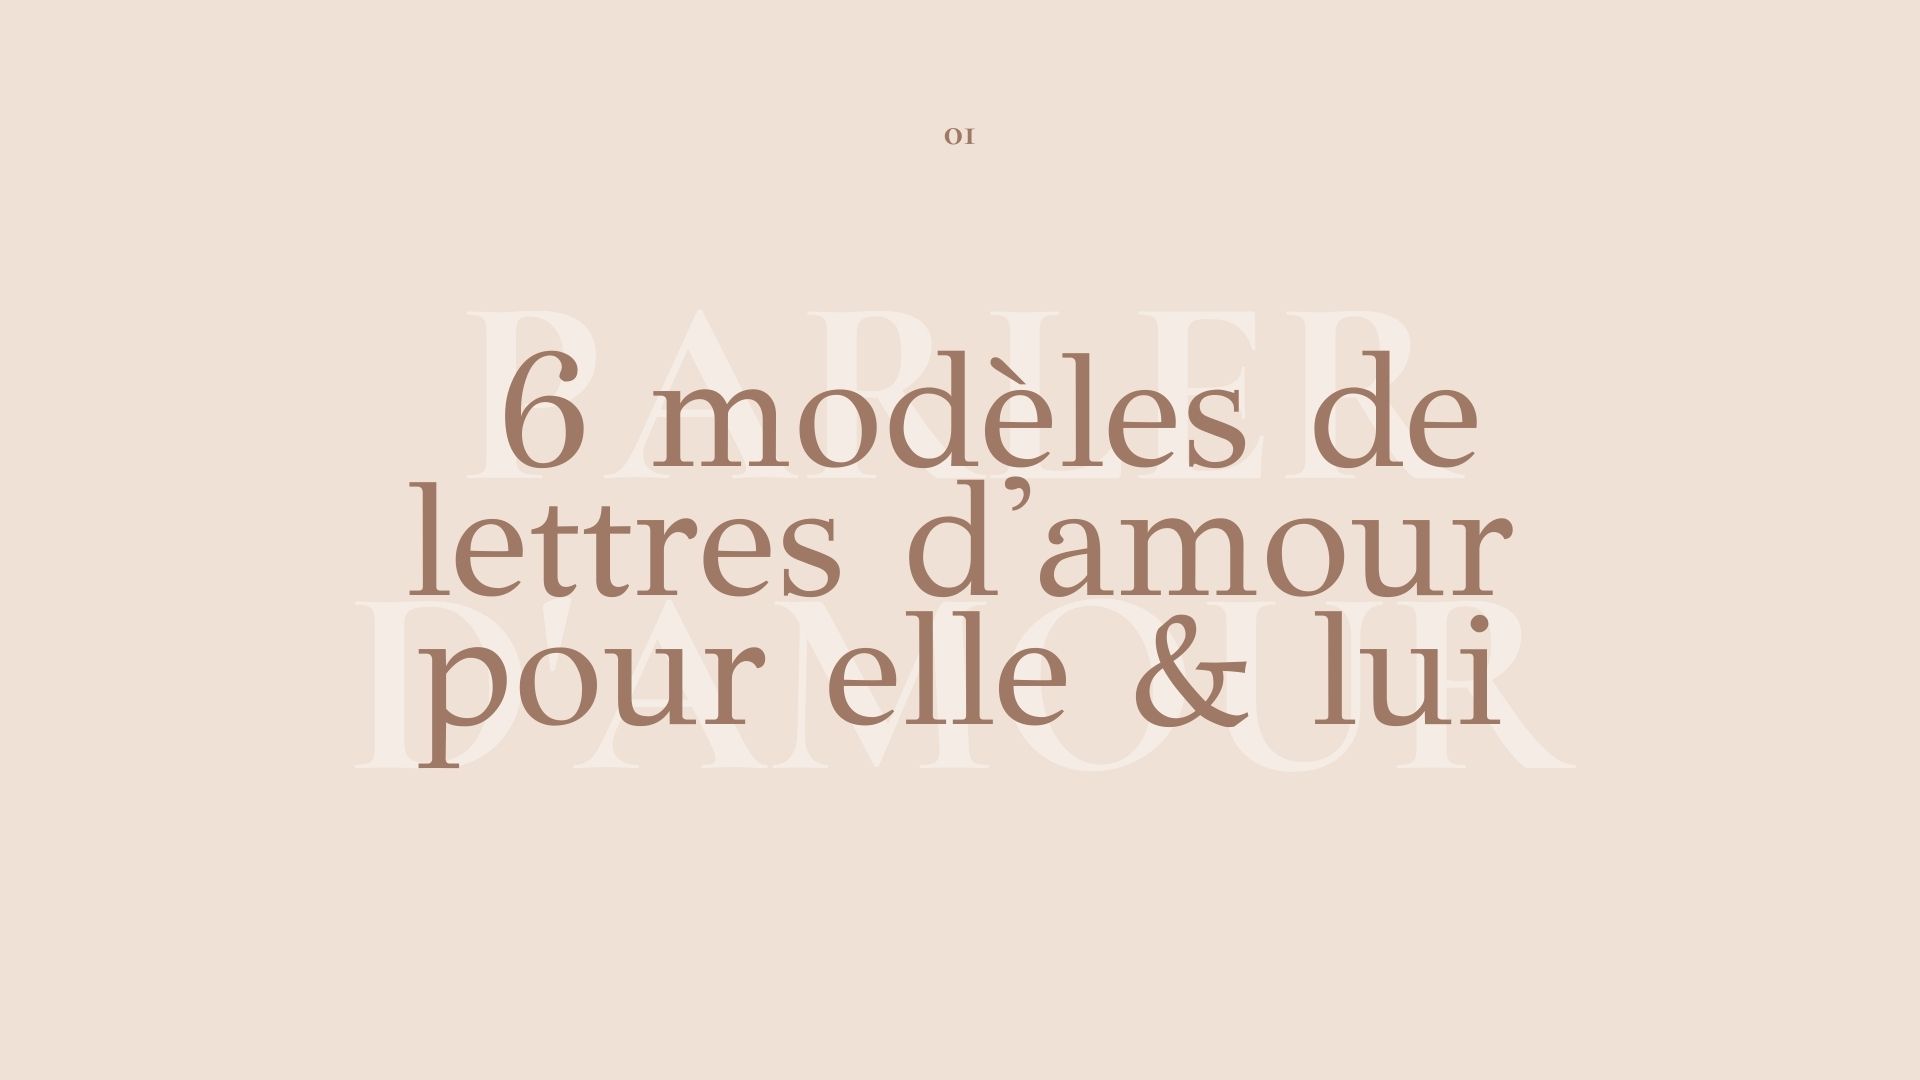 Lettres D Amour 6 Modeles De Lettres D Amour Pour Elle Lui Parler D Amour